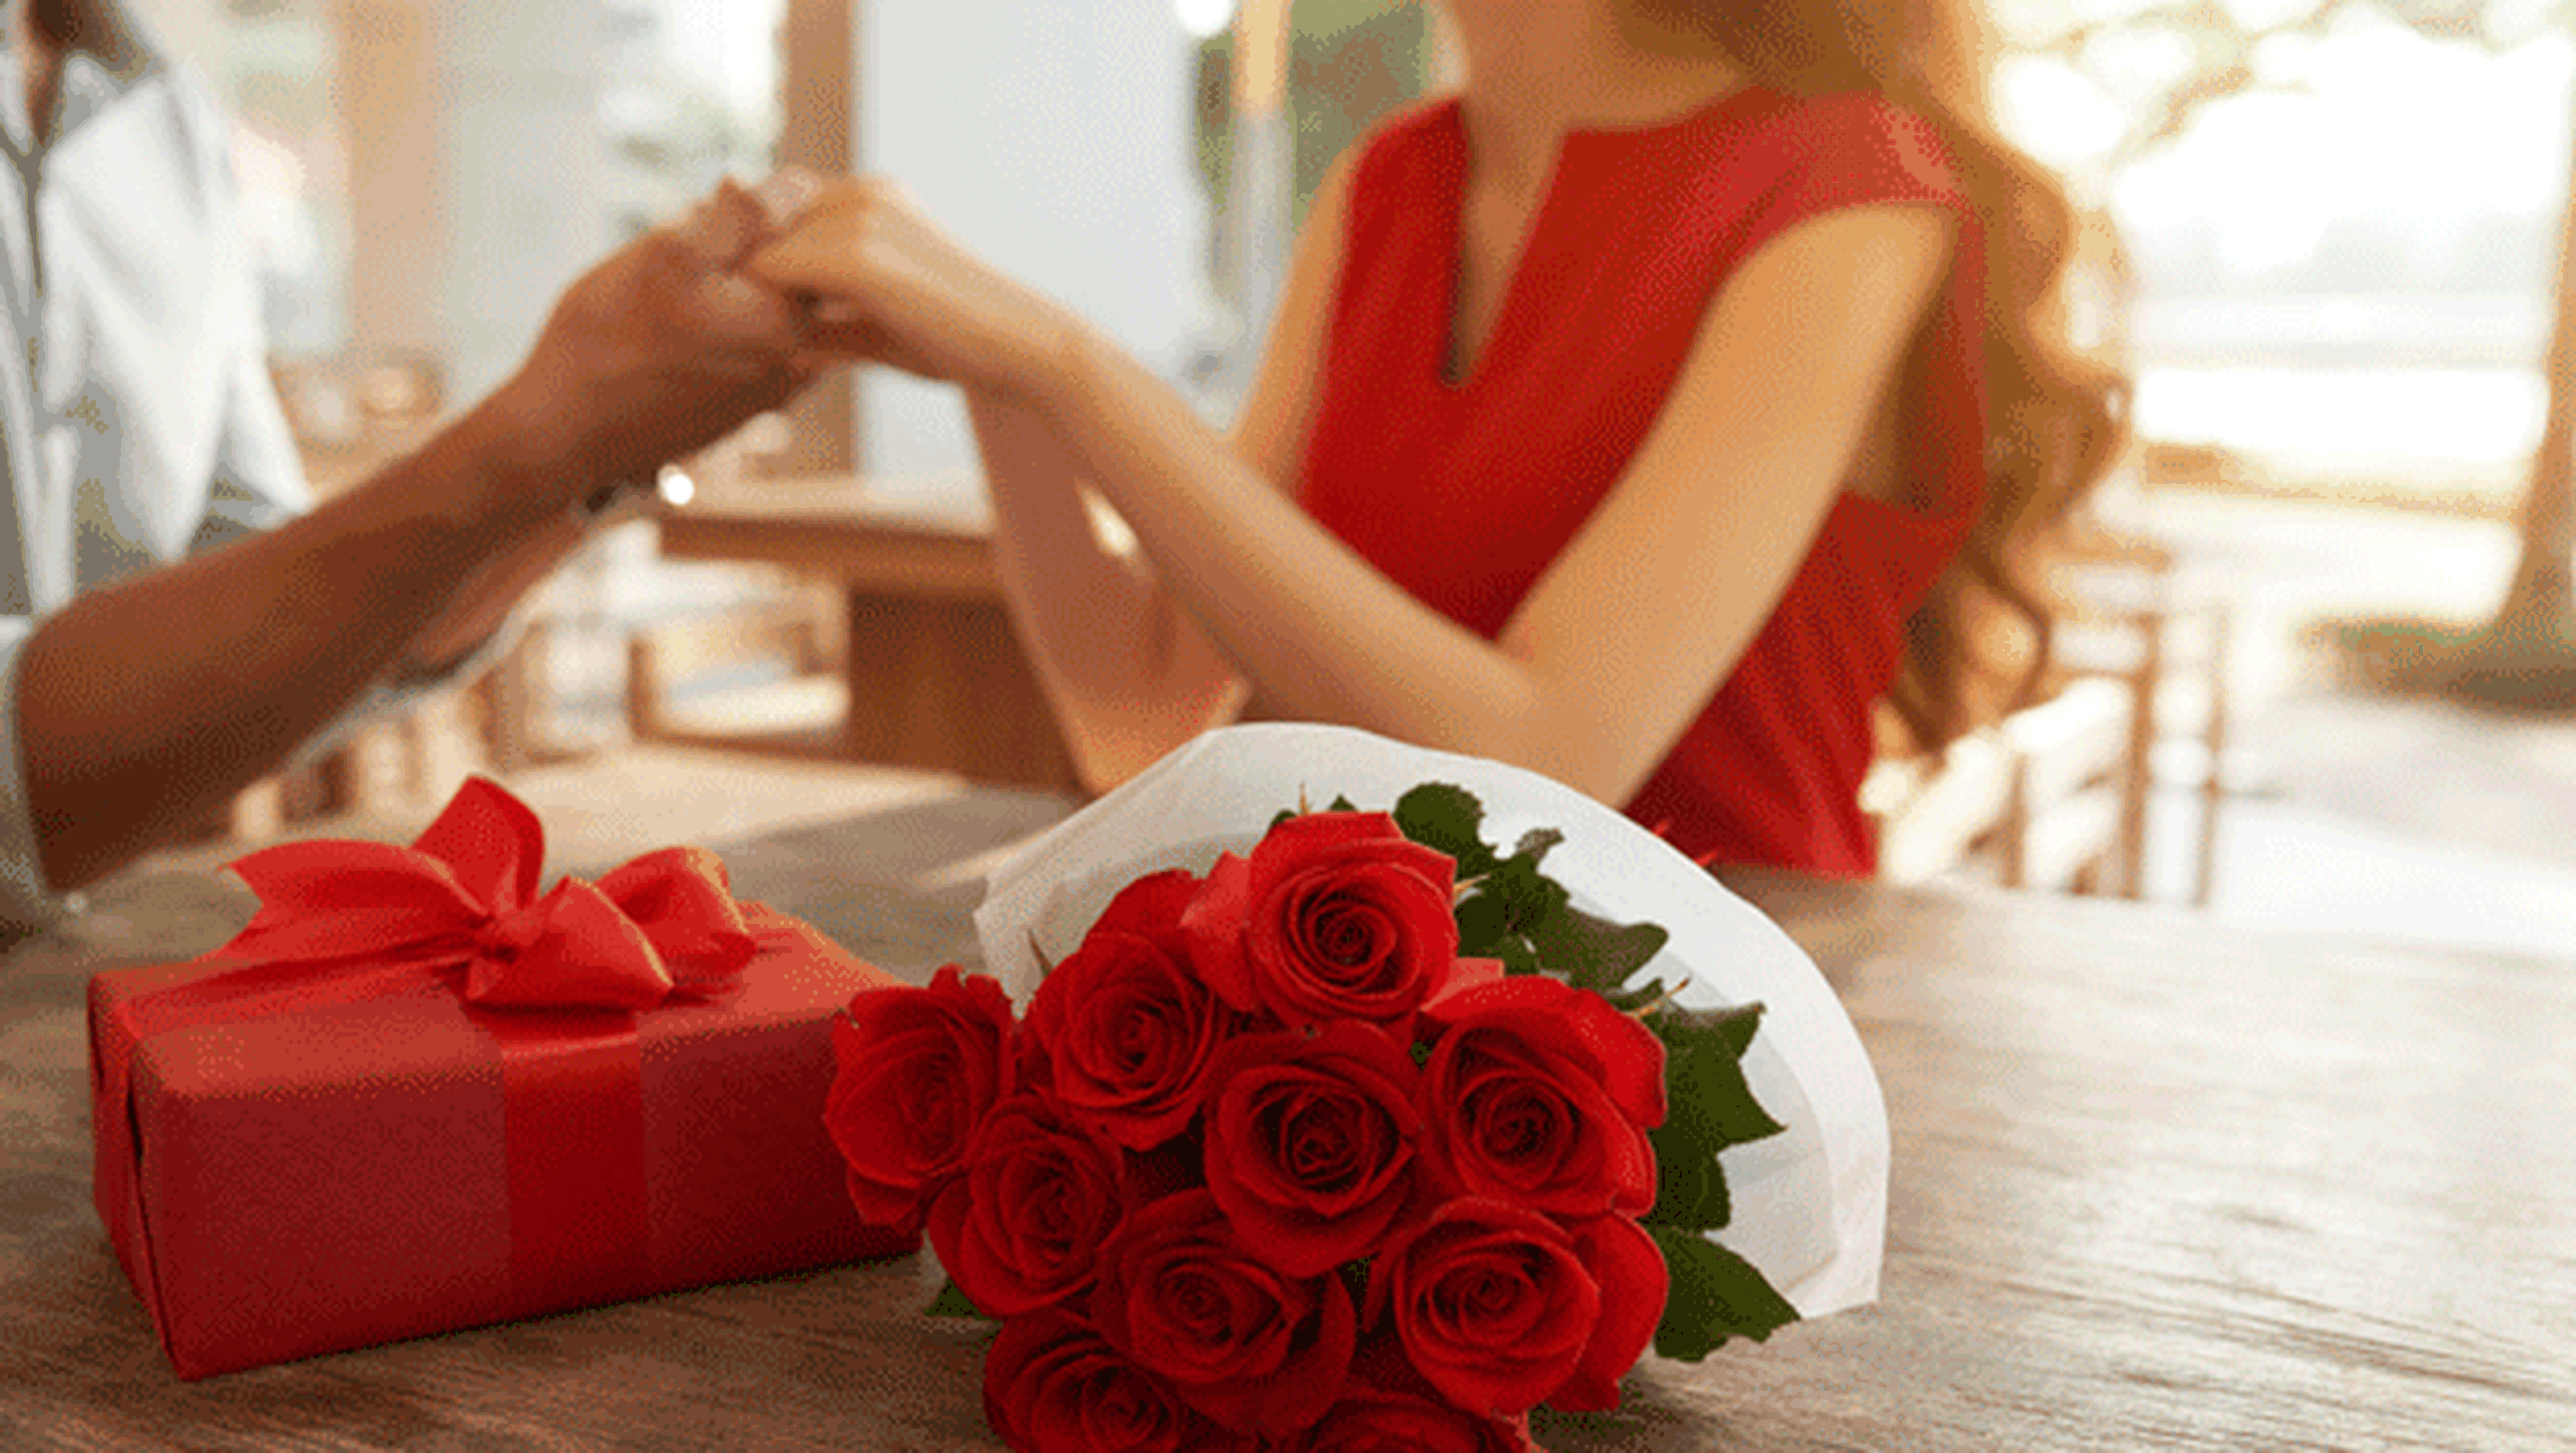 A la meditación lente no pueden ver Los mejores regalos de San Valentín para tu novio o novia | Computer Hoy